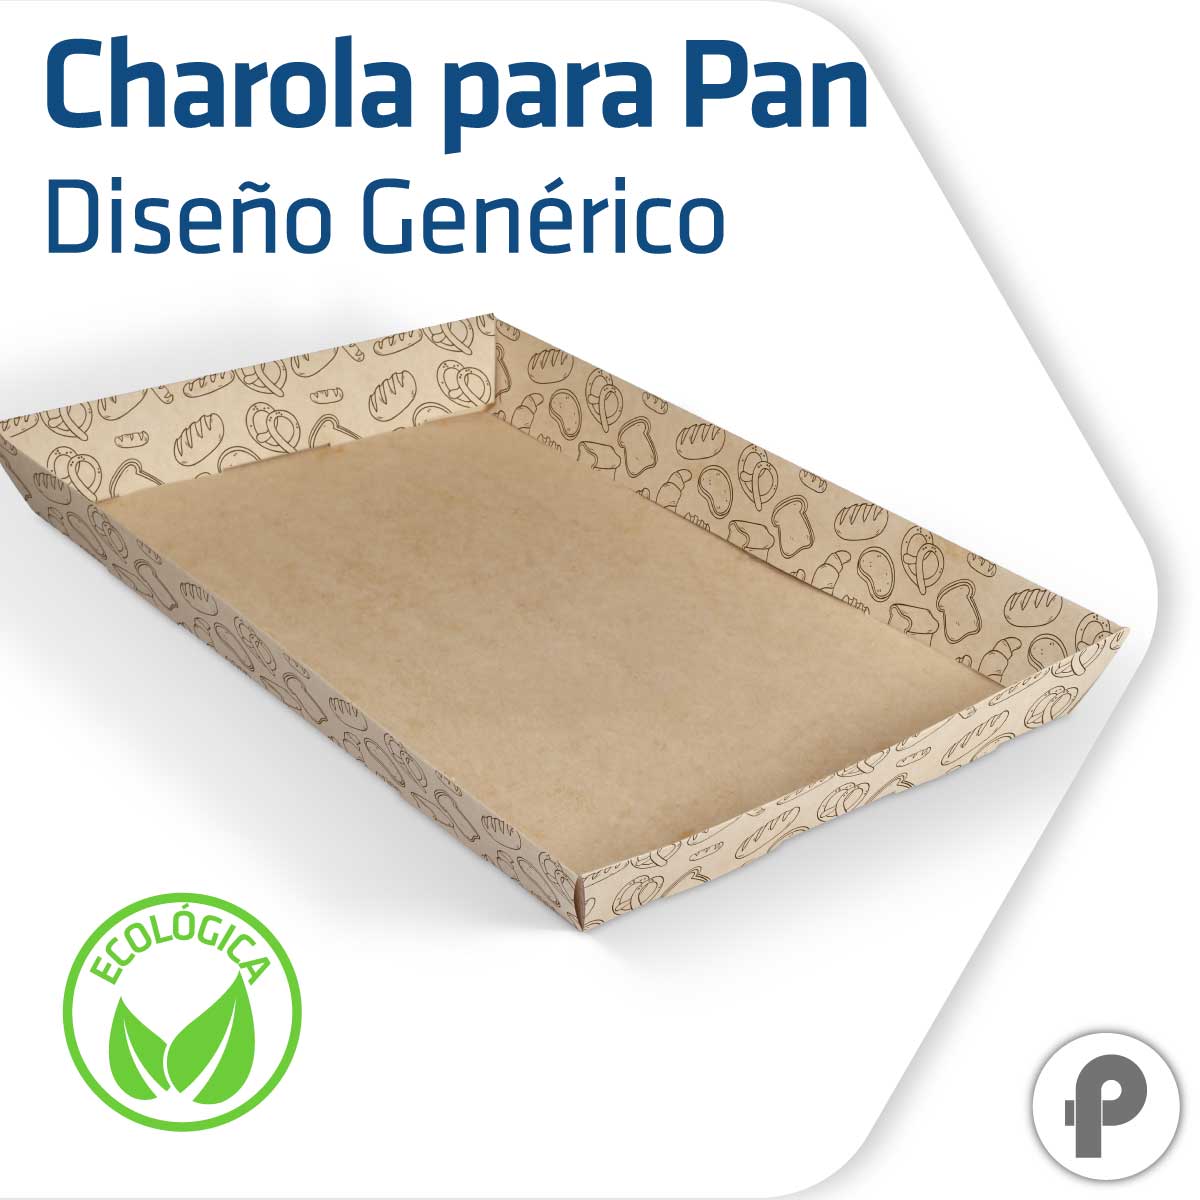 Miau miau Delgado por otra parte, Charola para Pan Biodegradable Diseño Genérico - Picaso Publicidad